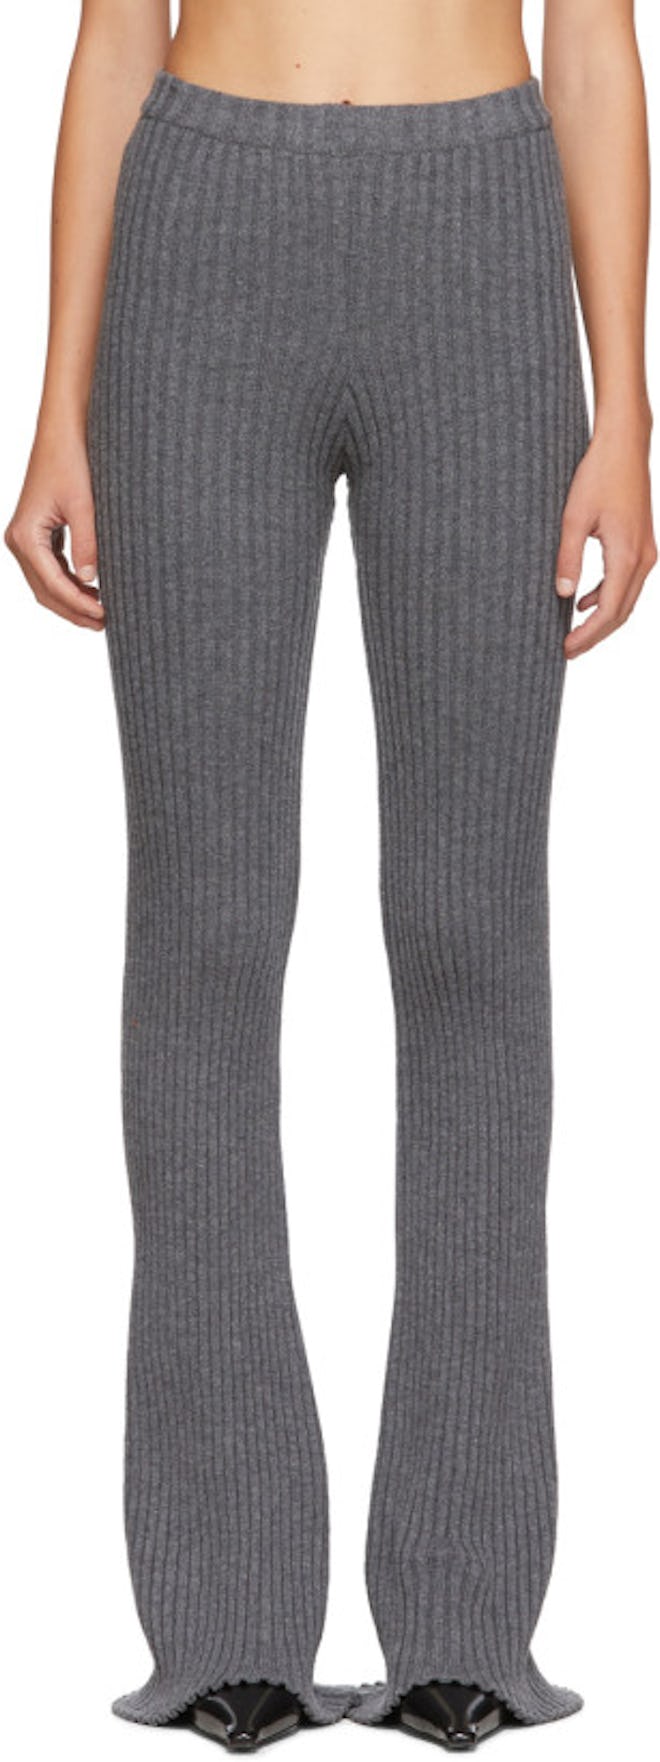 SSENSE Exclusive Grey Rib Knit Lounge Pants